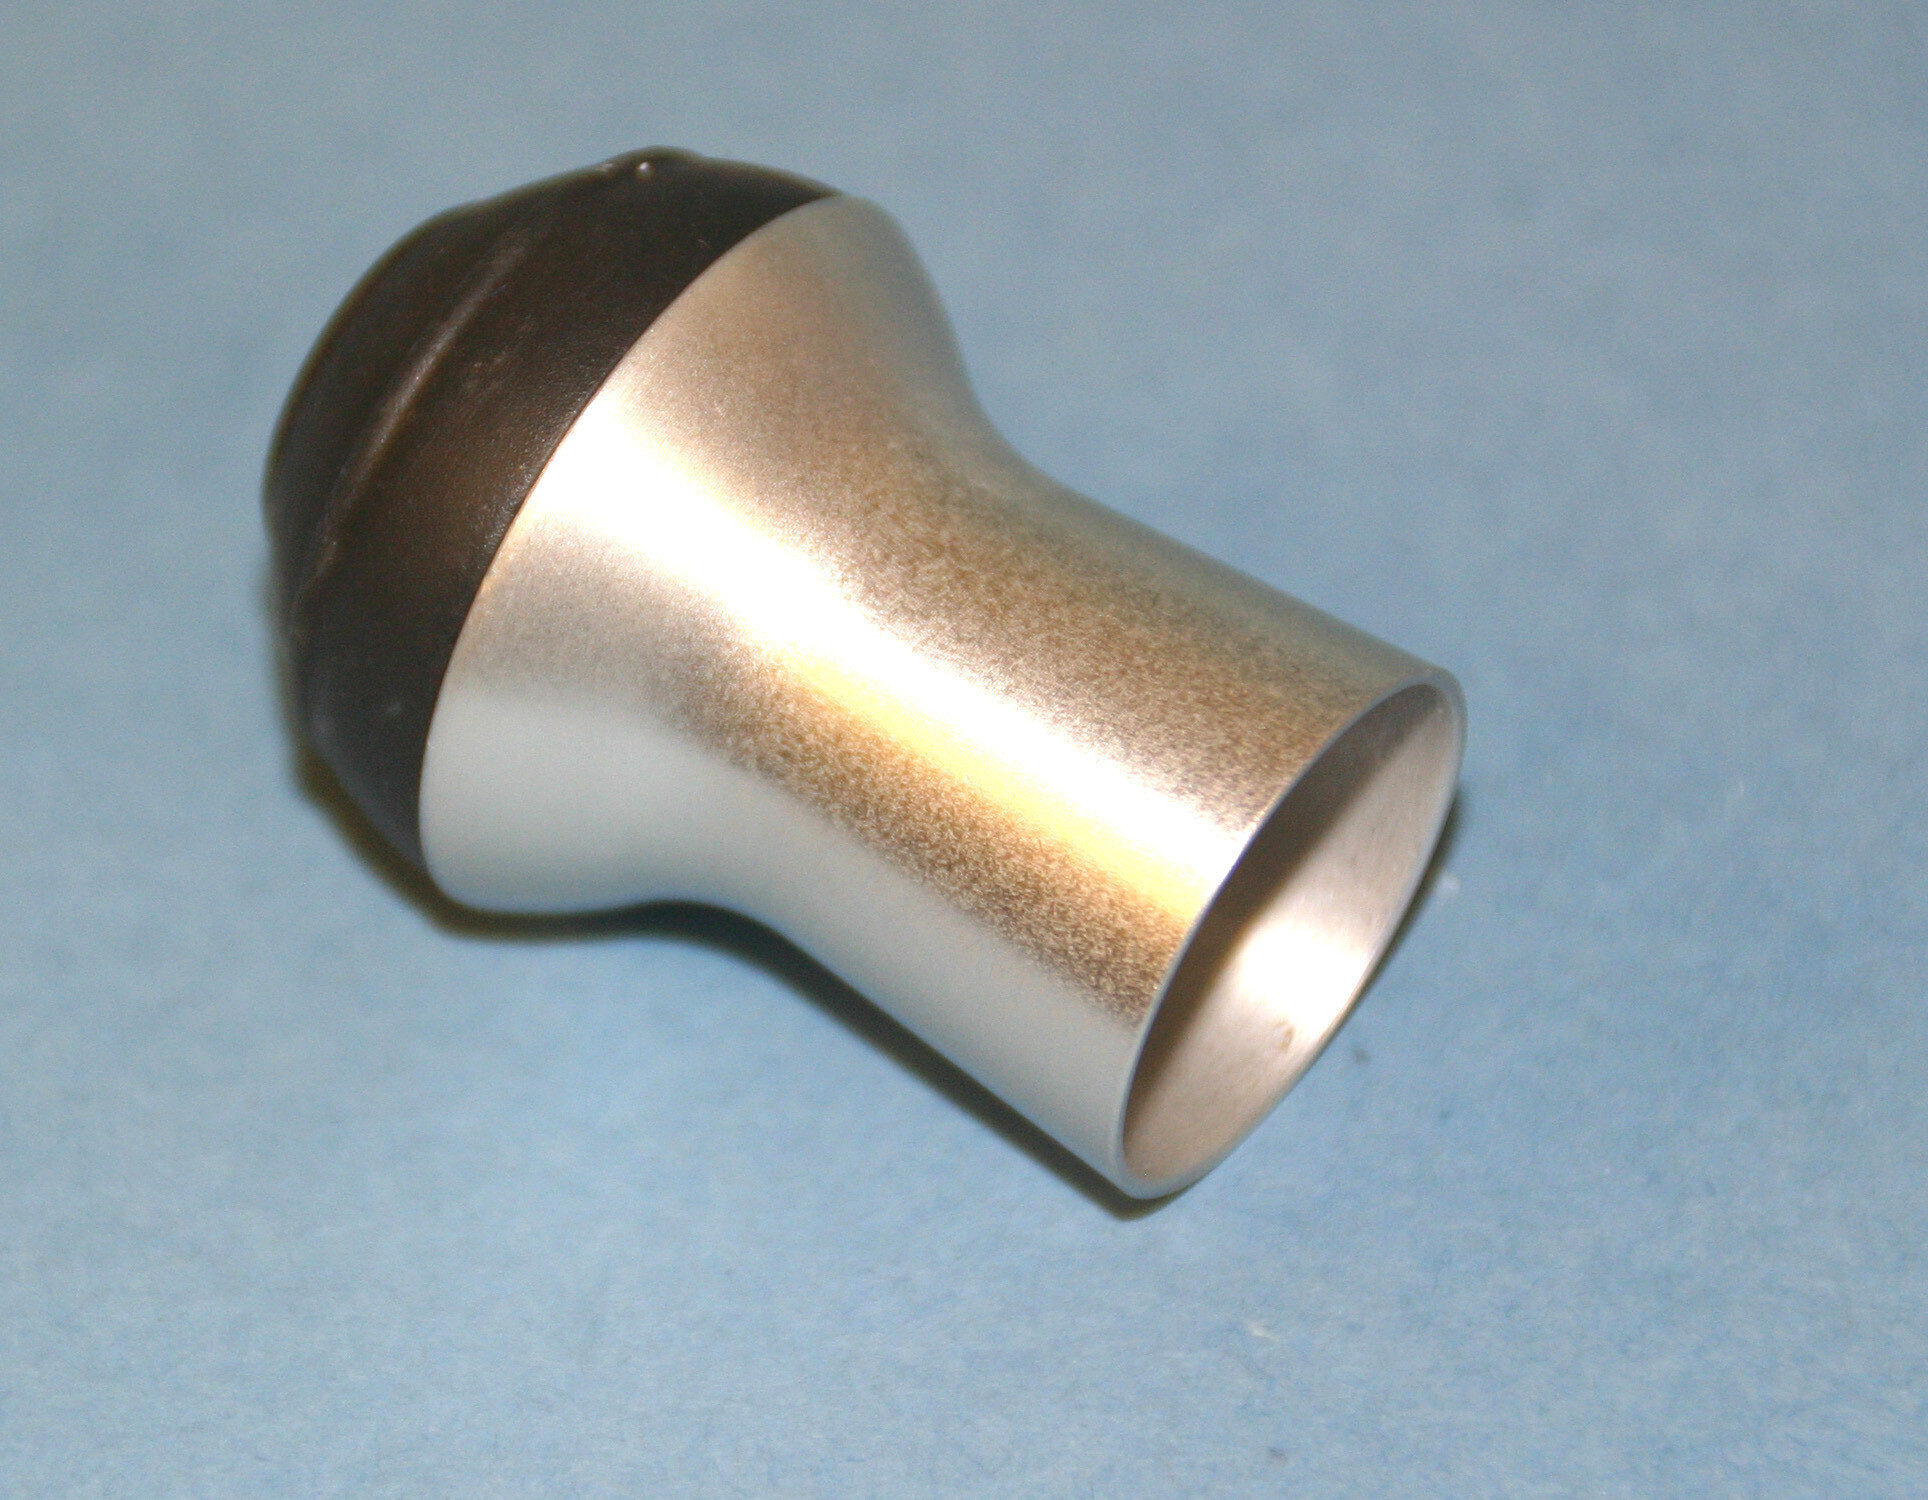 Aluminium 'Wye' Butt Cap - Ferrules,Trim Rings,Butt Caps,Gimbals,Winding  Checks, Buttons - Handles & Grips